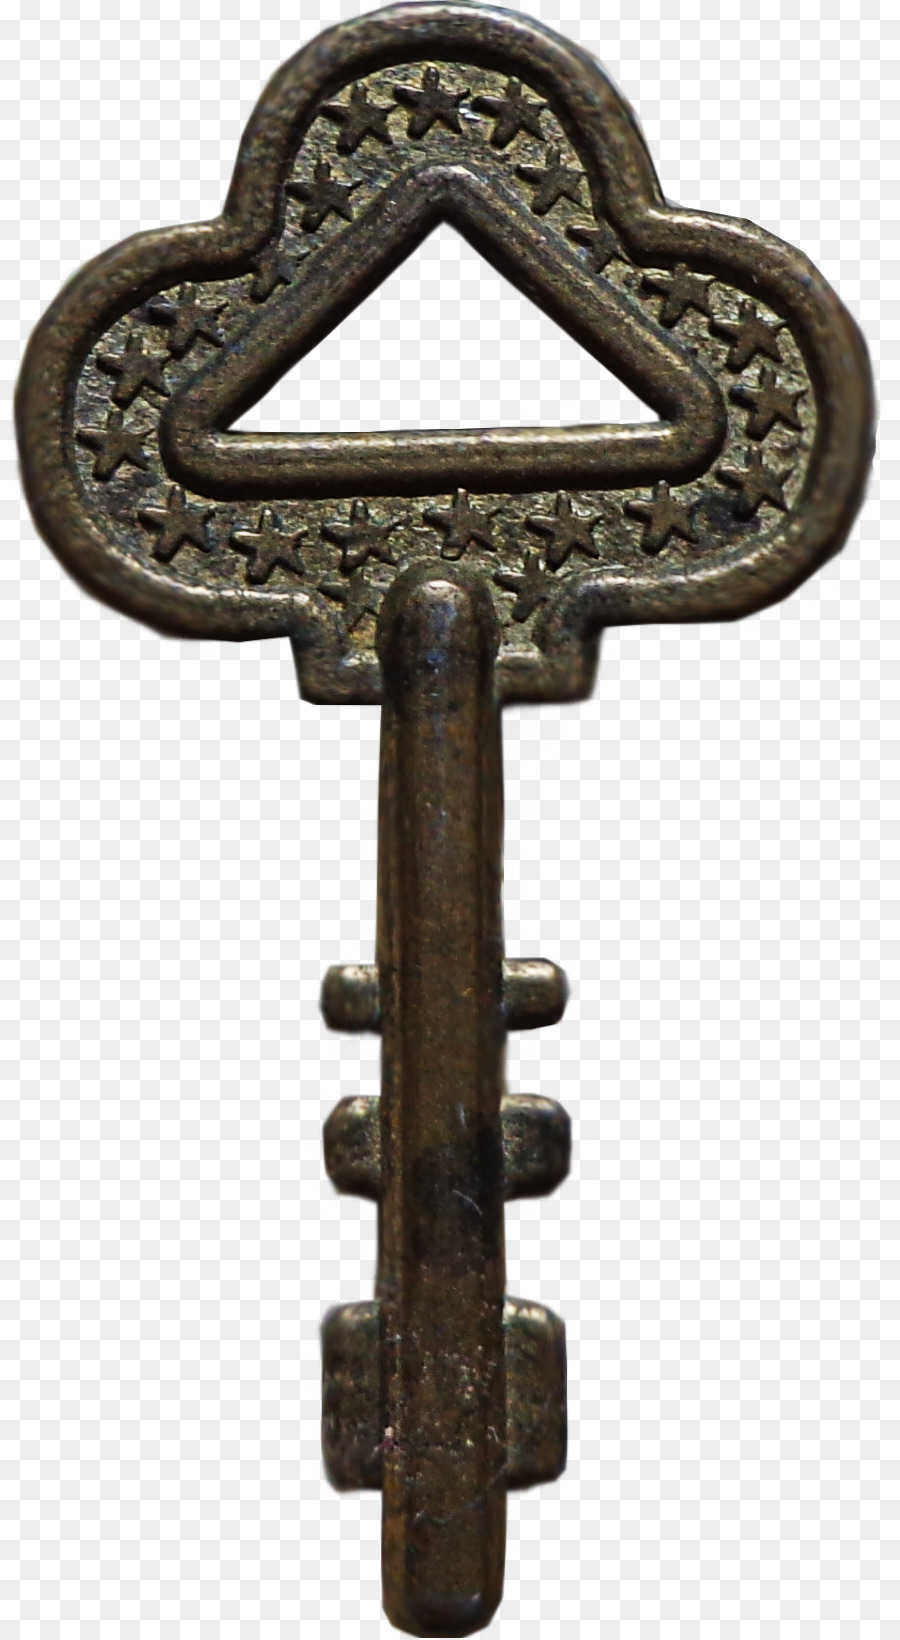 Serratura di chiave di Scheletro Clip art - chiave